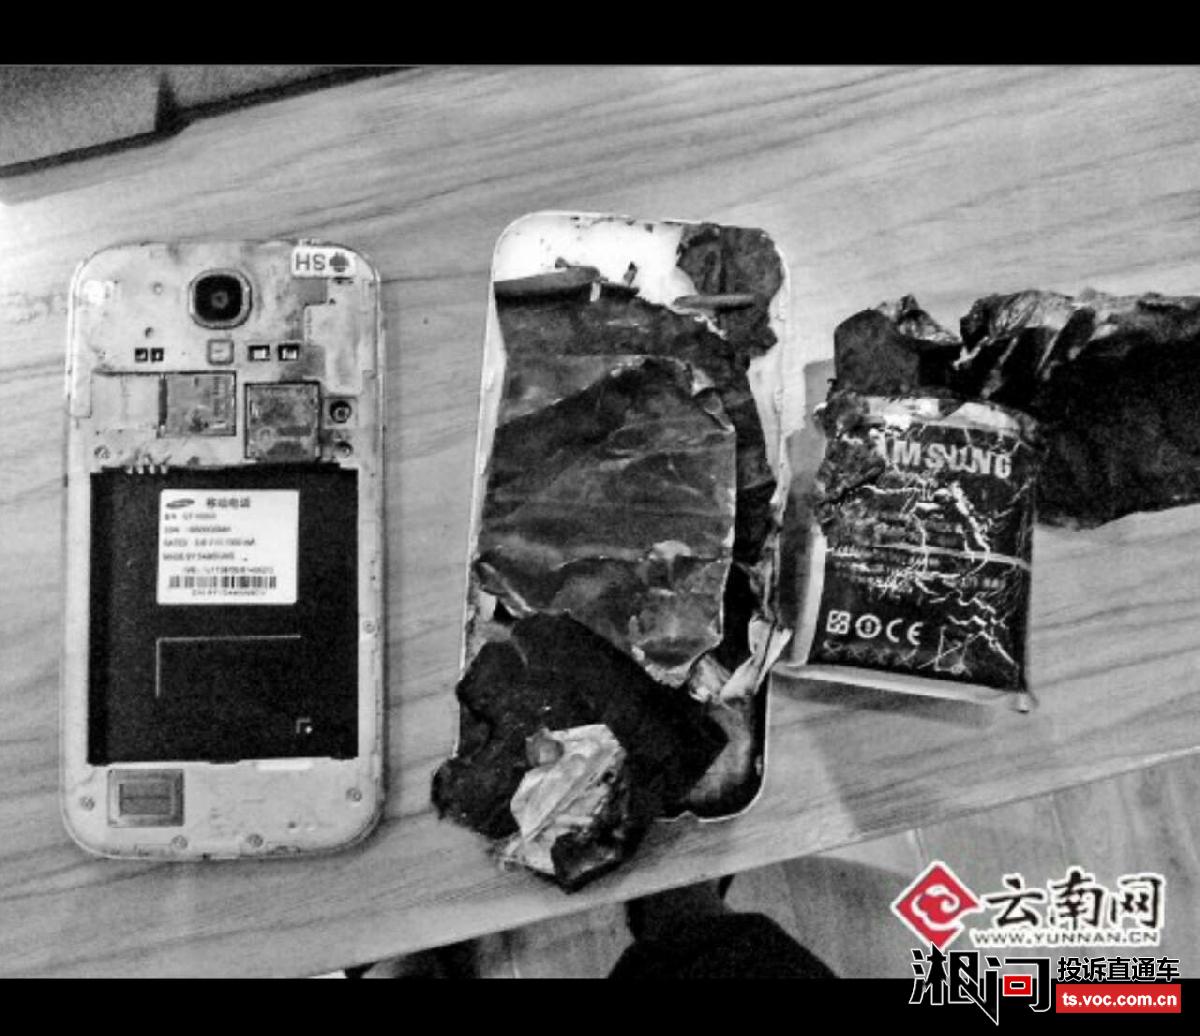 投诉主题:三星S4手机充电爆炸 受害者多次与厂